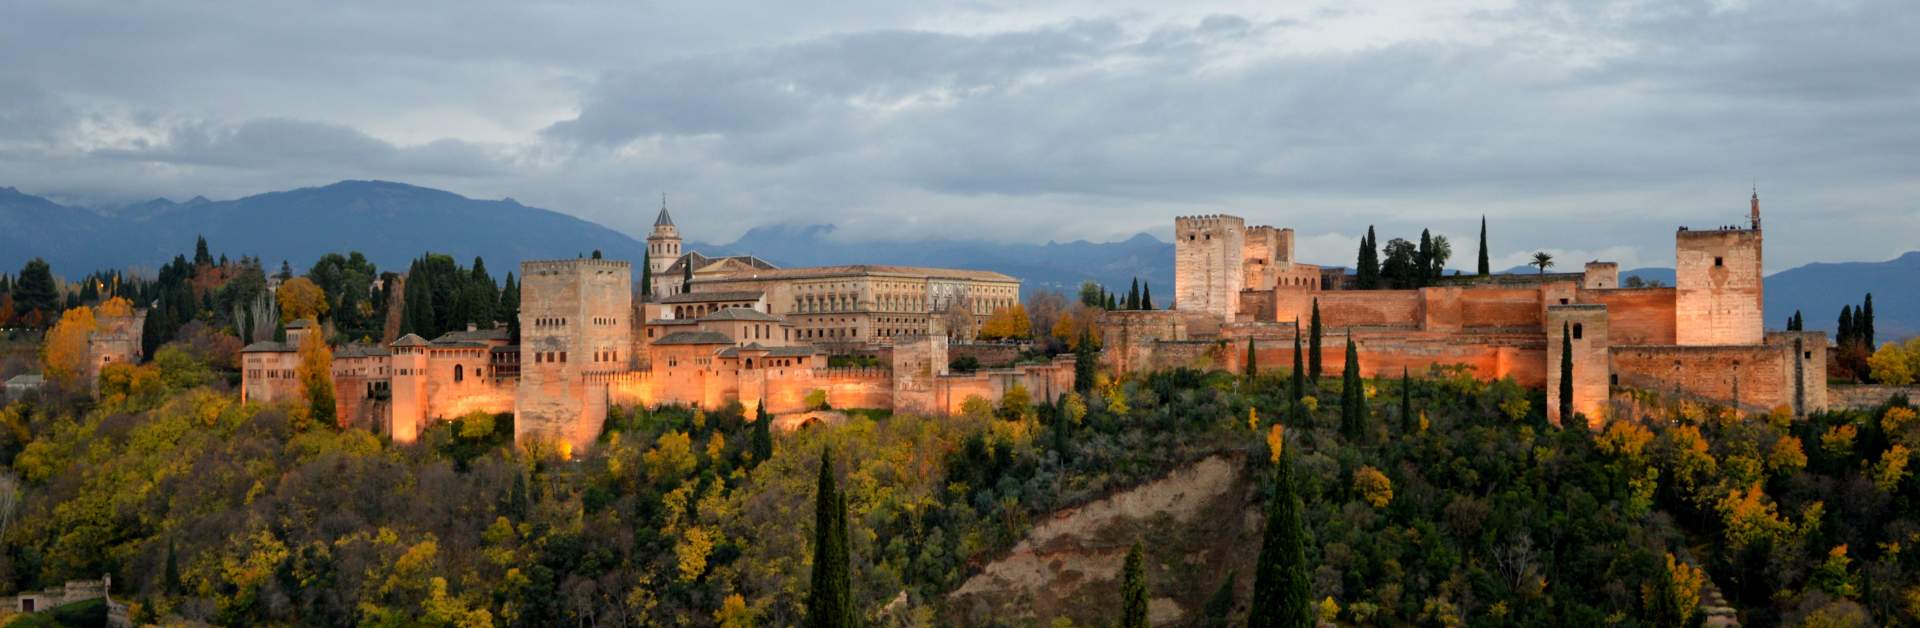 Busreis Andalusië rondreis Alhambra ©Ricardo Manzano from Pixabay